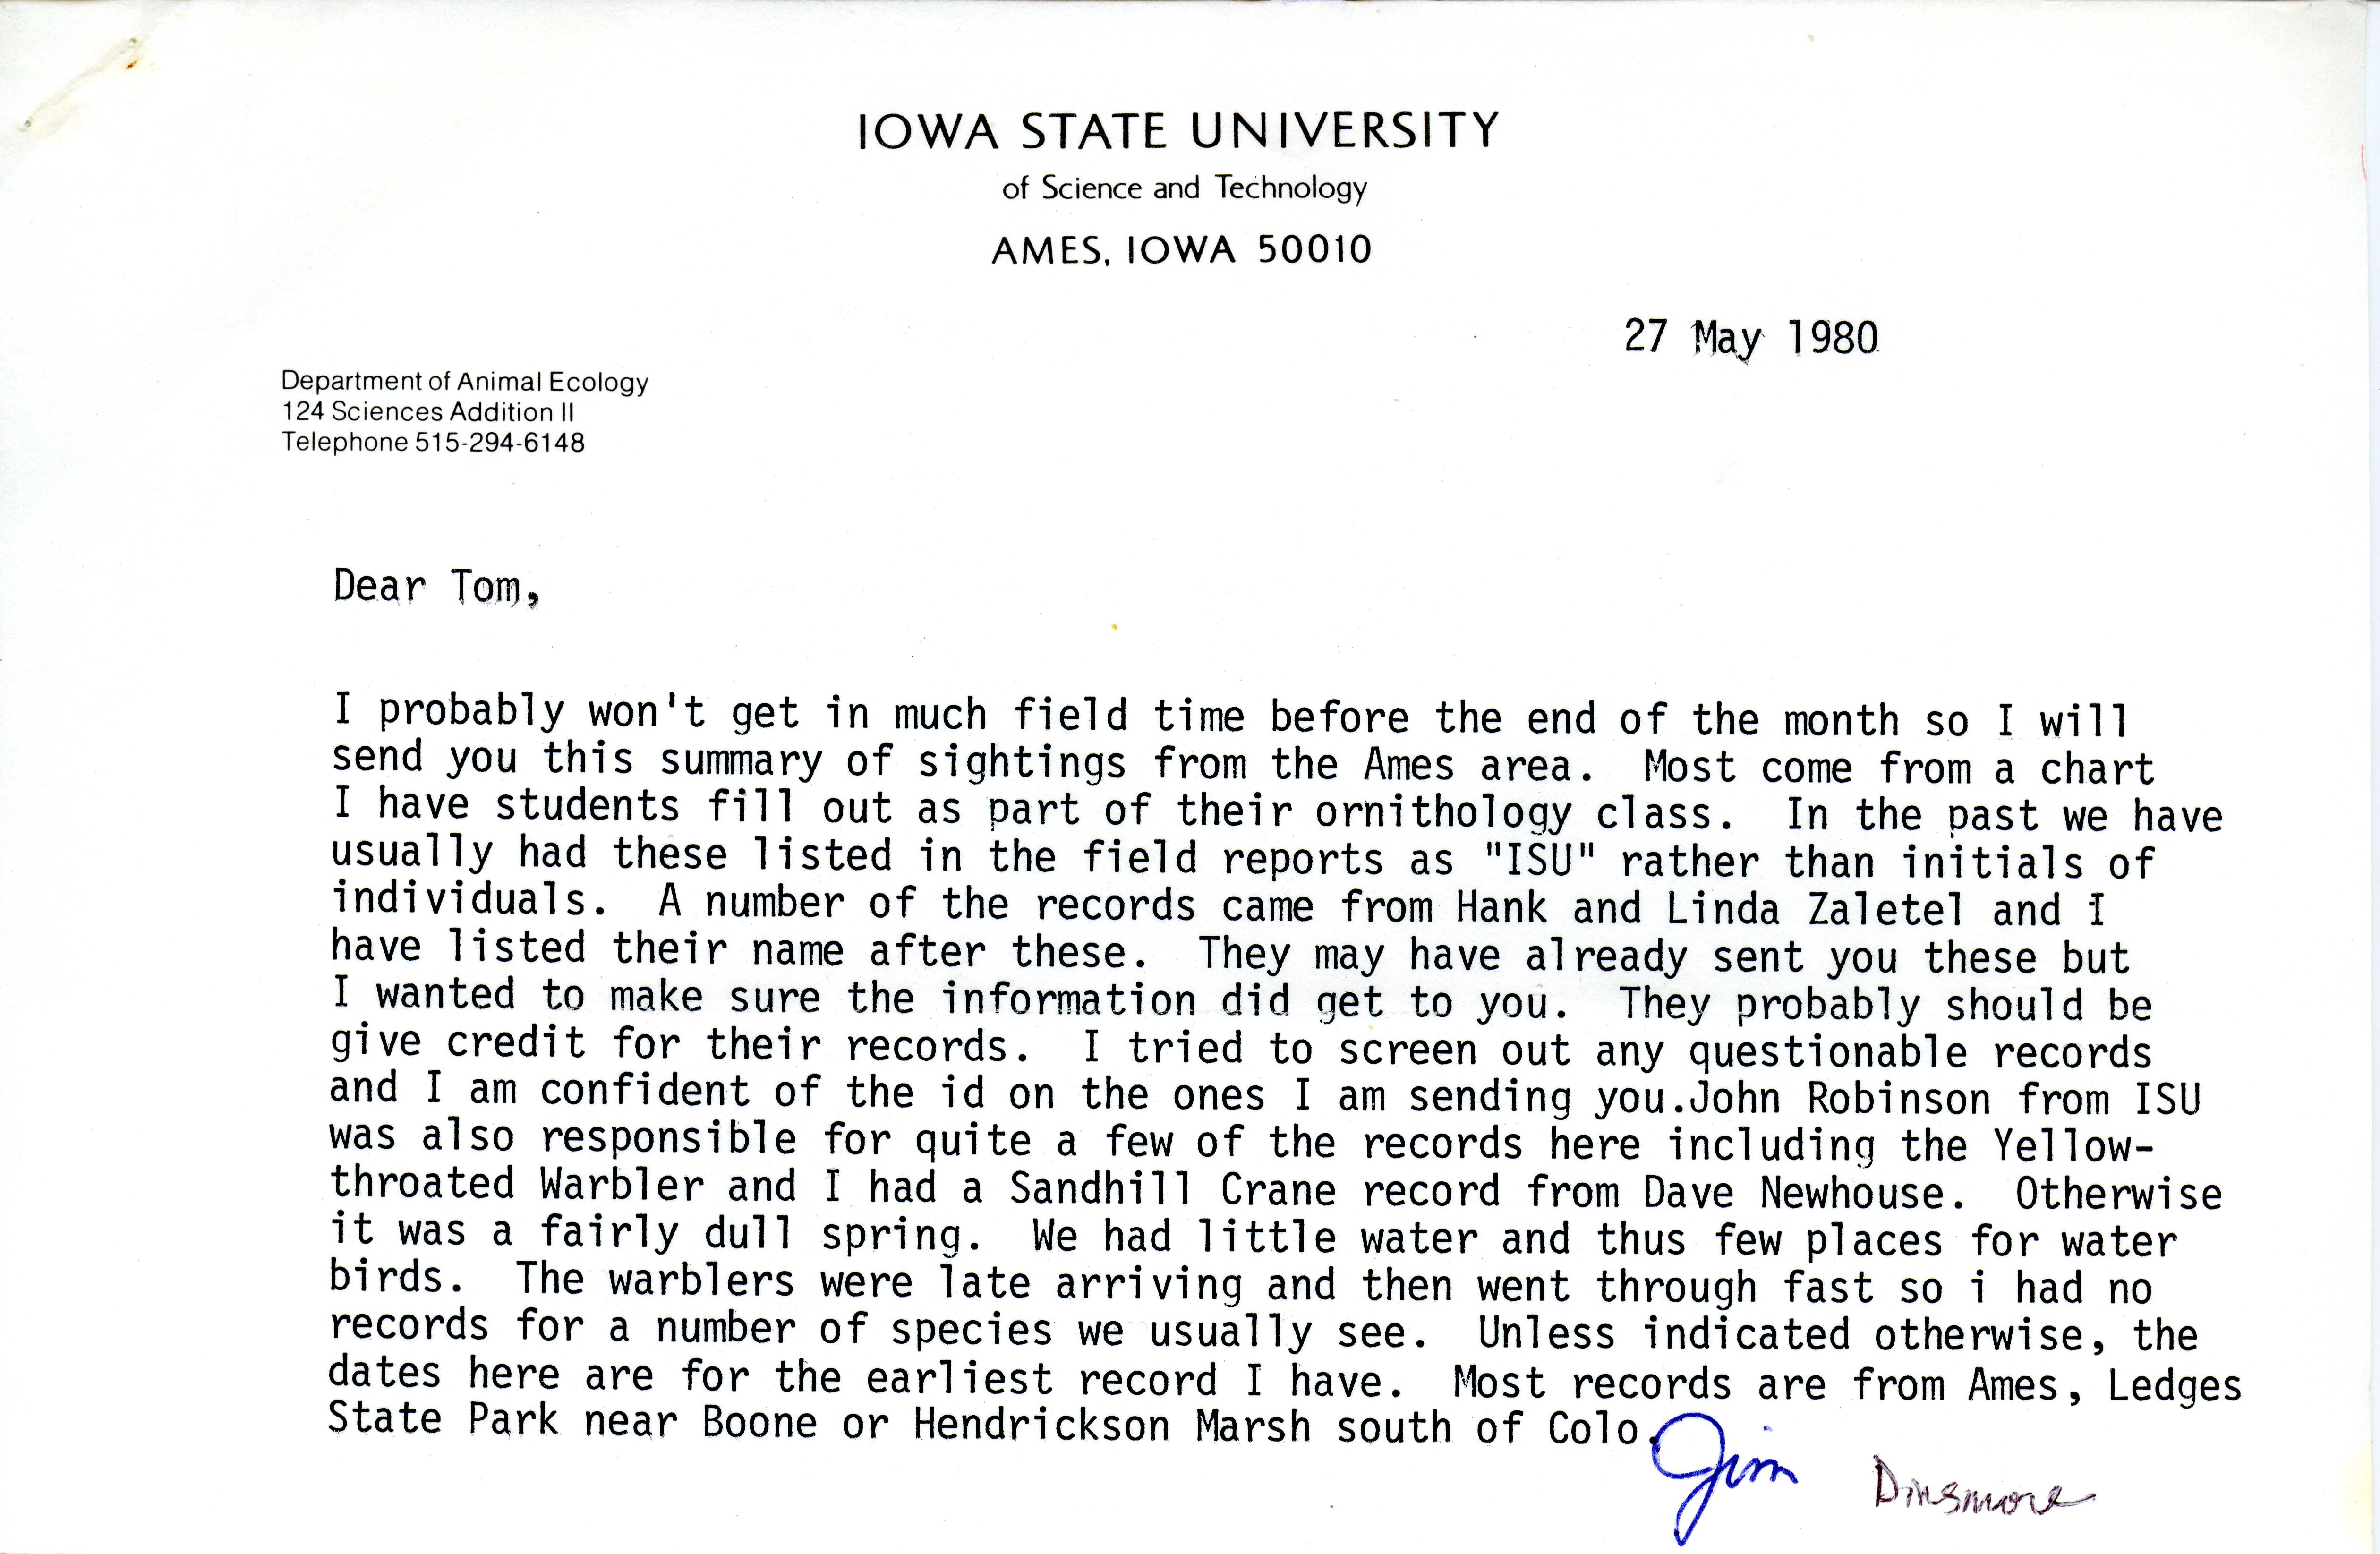 James J. Dinsmore letter to Thomas H. Kent regarding bird sightings, May 27, 1980